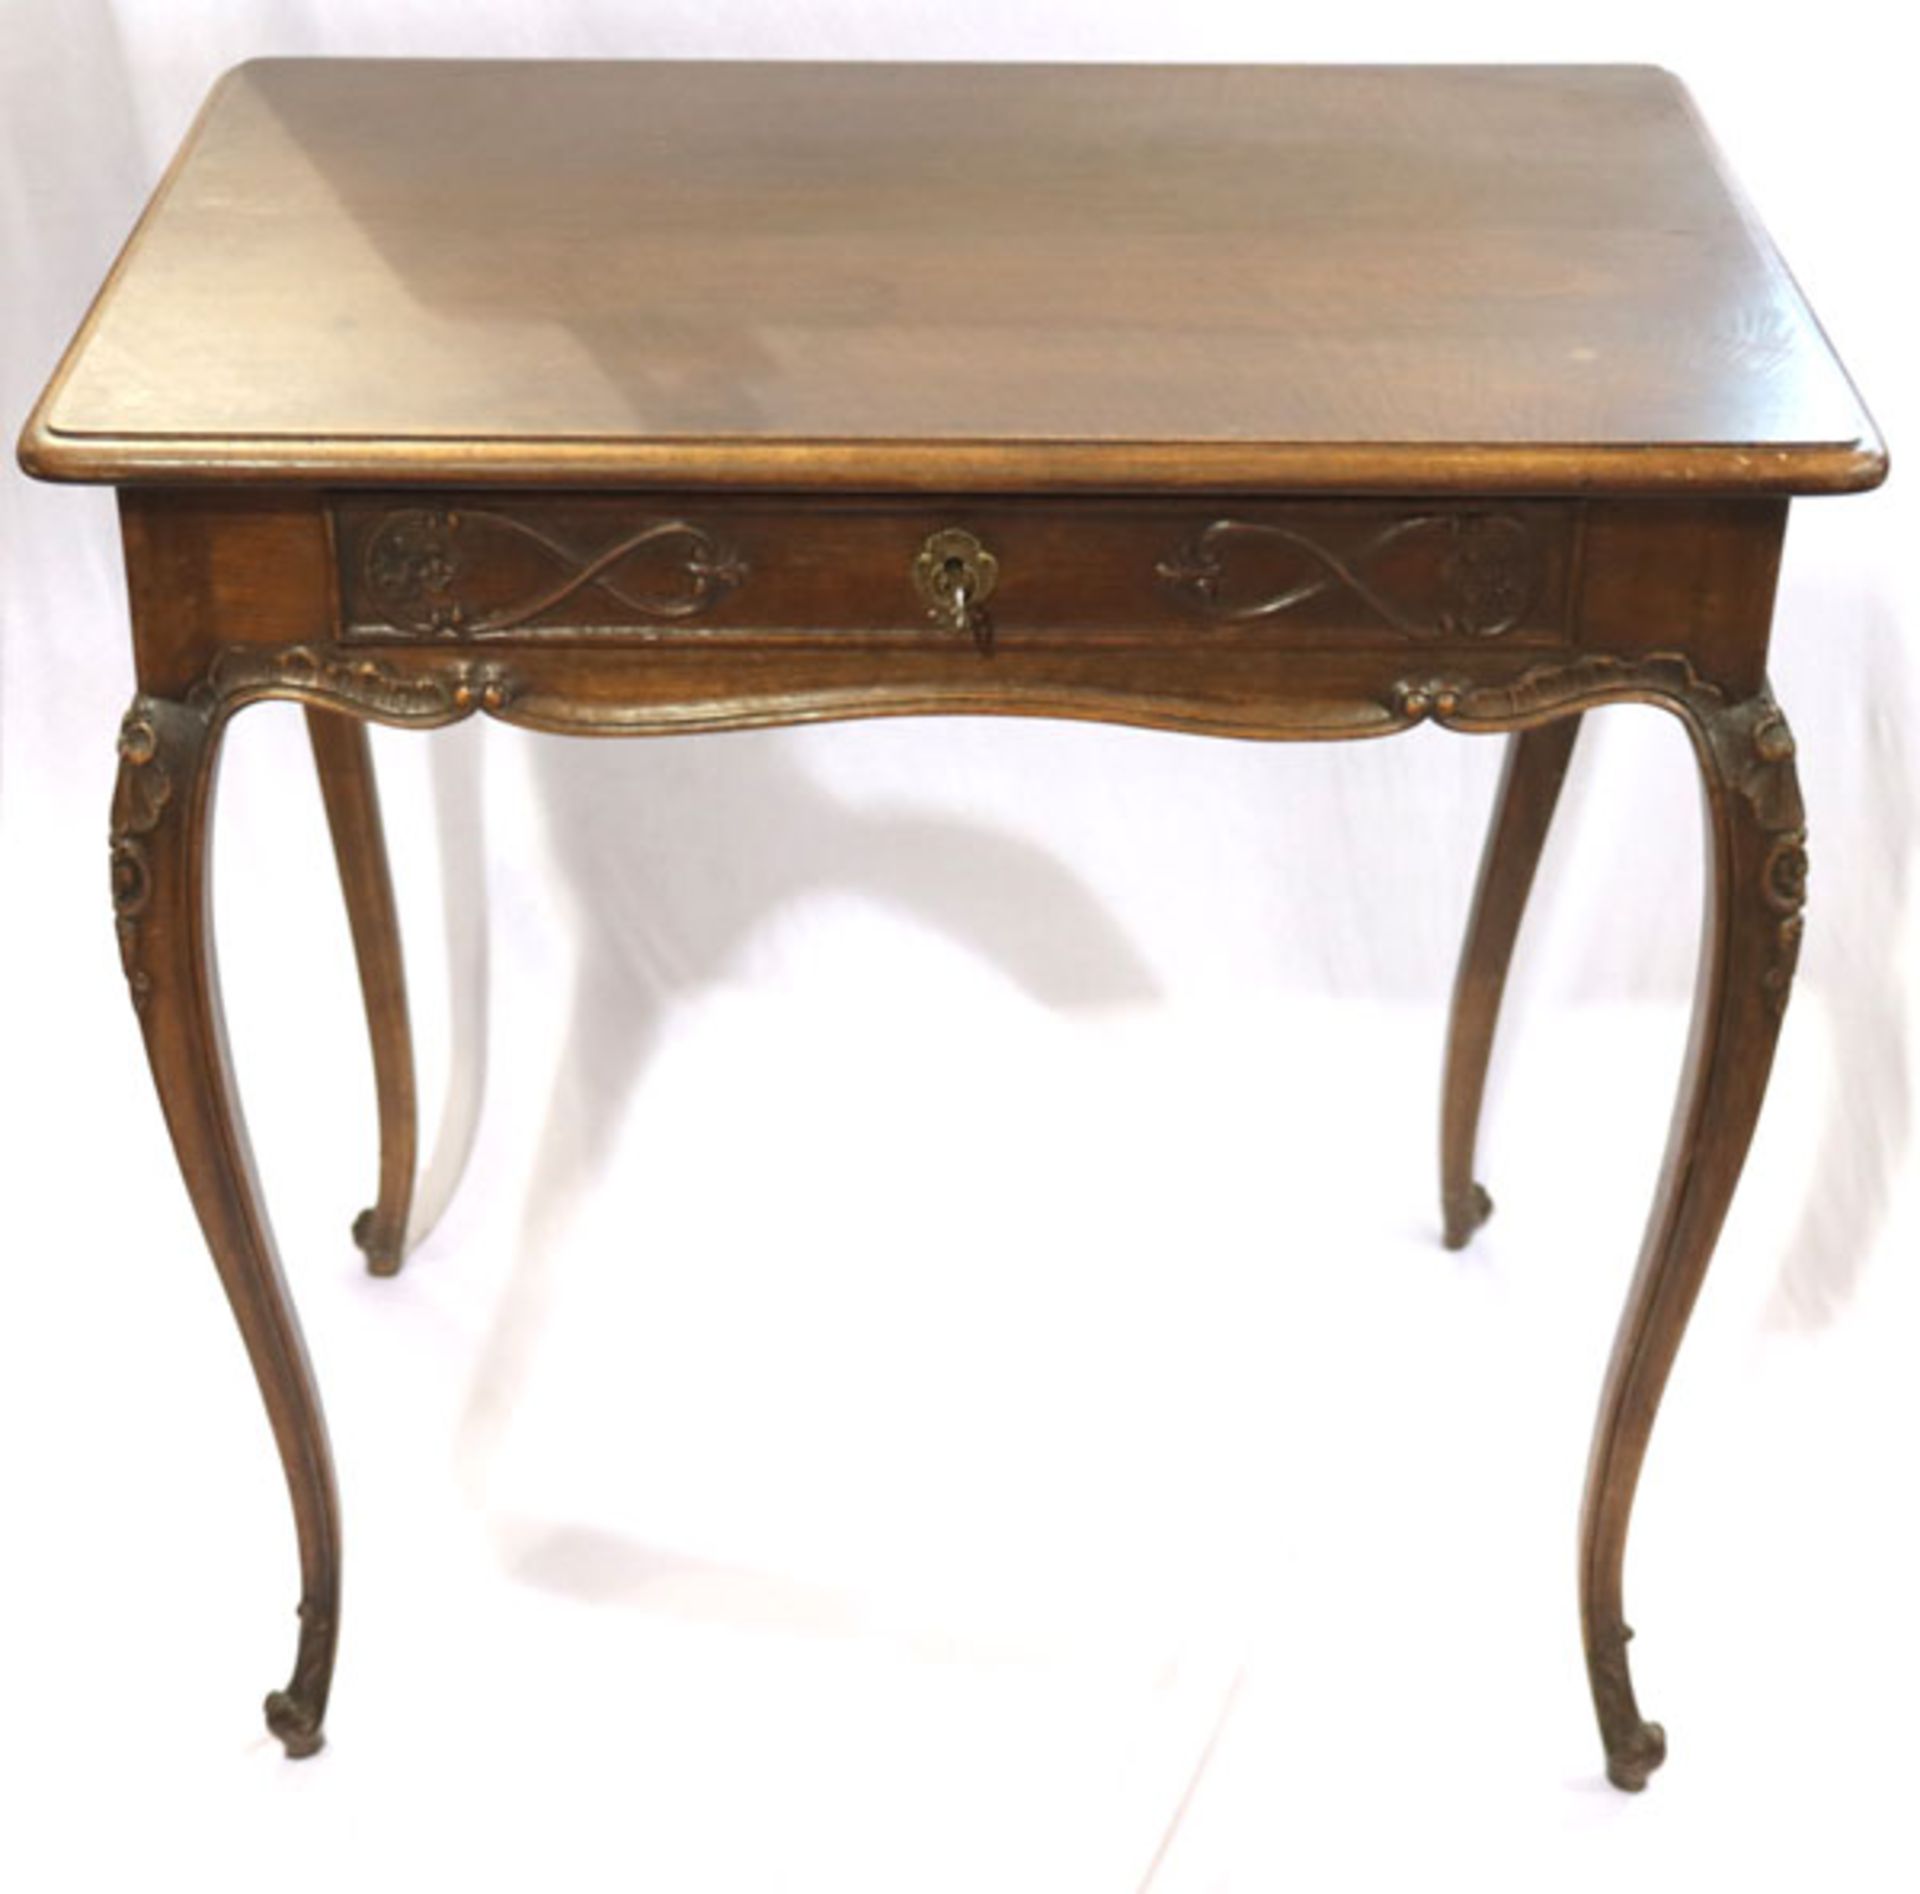 Schreibtisch auf geschwungenen Beinen, teils beschnitzt, Korpus mit einer Schublade, H 78 cm, B 80